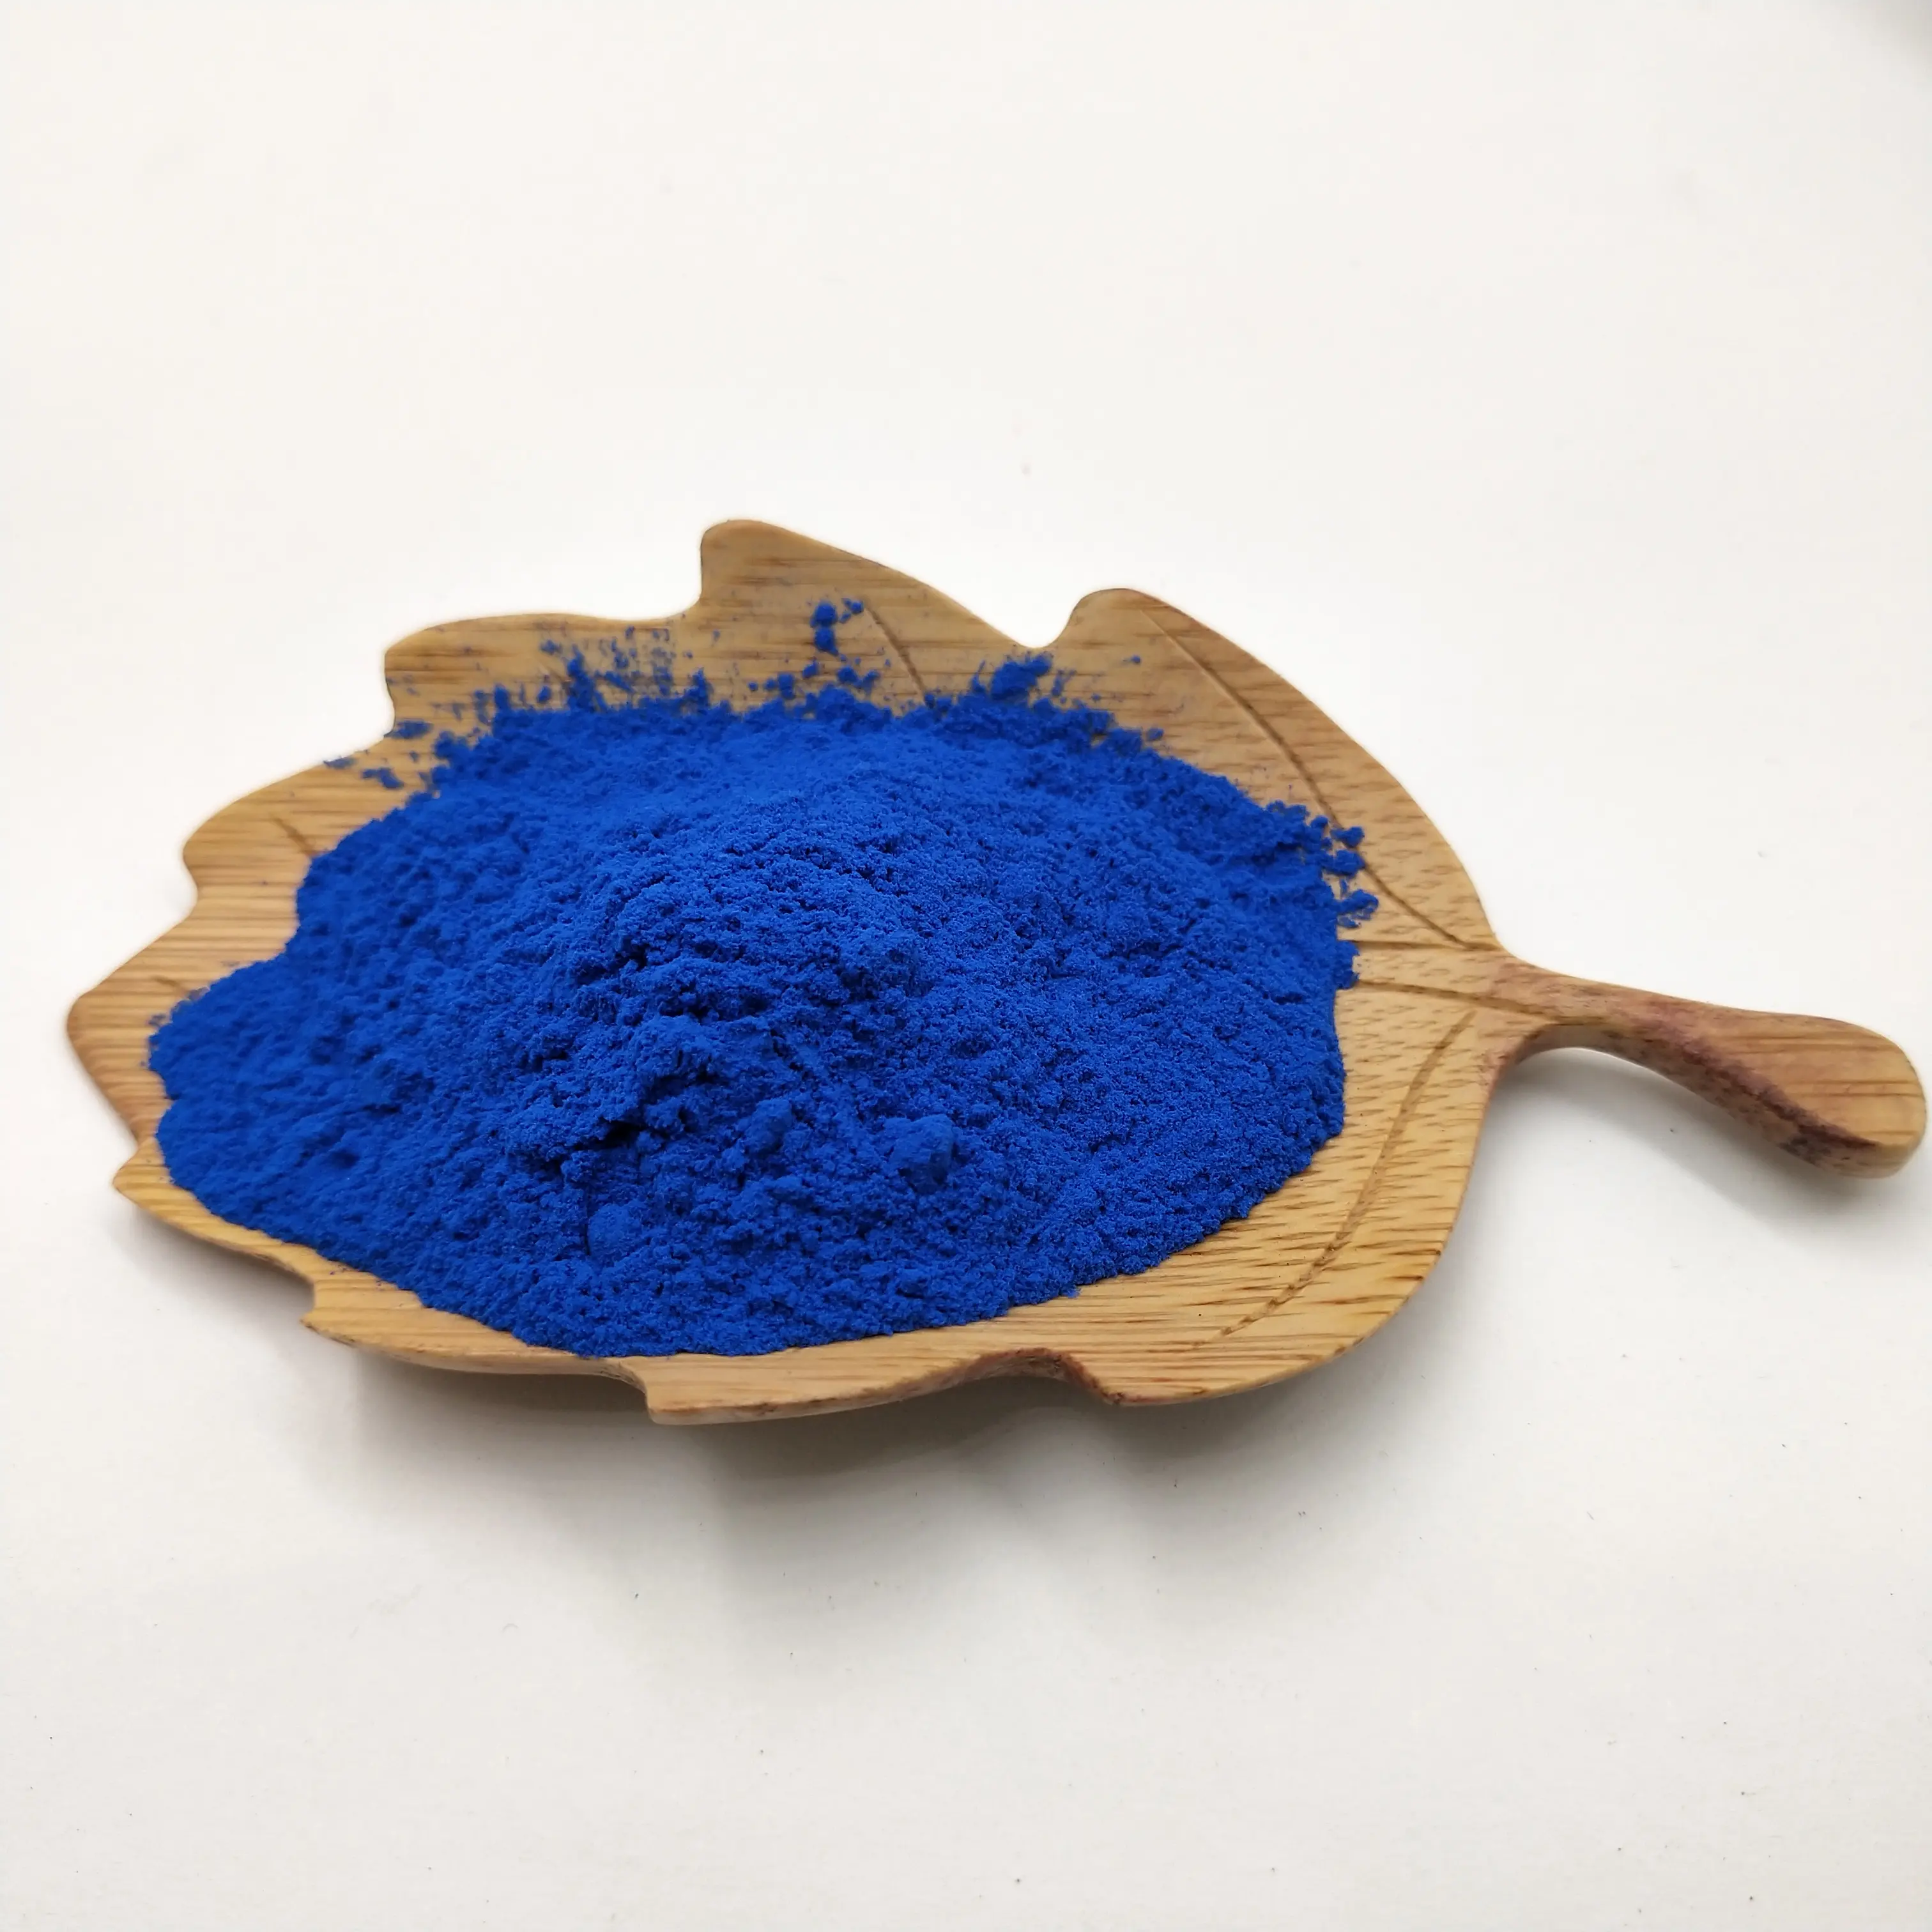 Ficocianina blu estratto di spirulina ficocianina e18 vendita estratto di spirulina pigmento blu ficocianina prezzo